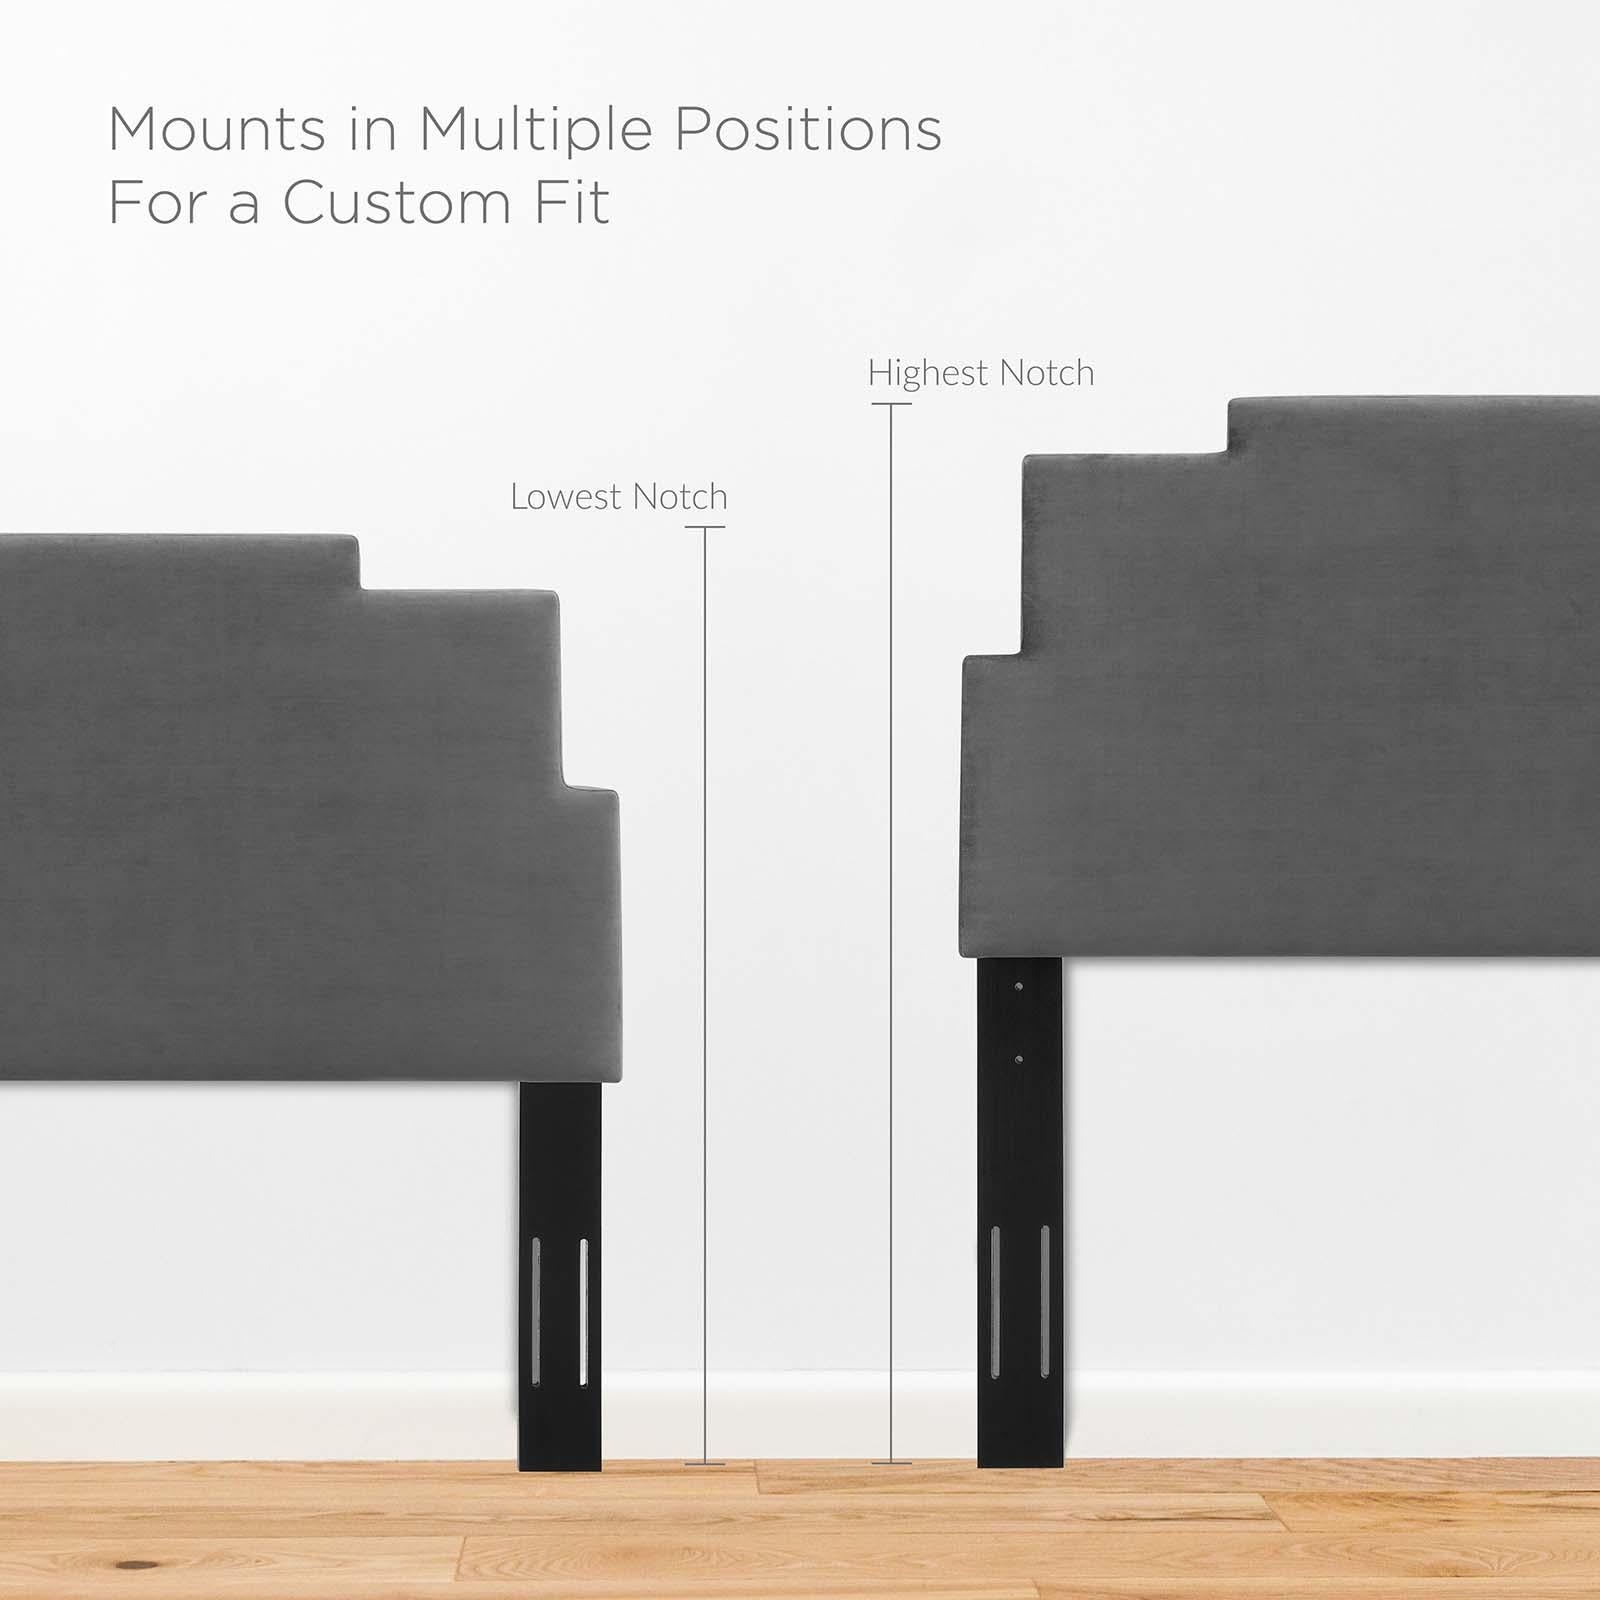 Modway Furniture Modern Lindsey Performance Velvet Twin Platform Bed - MOD-6895